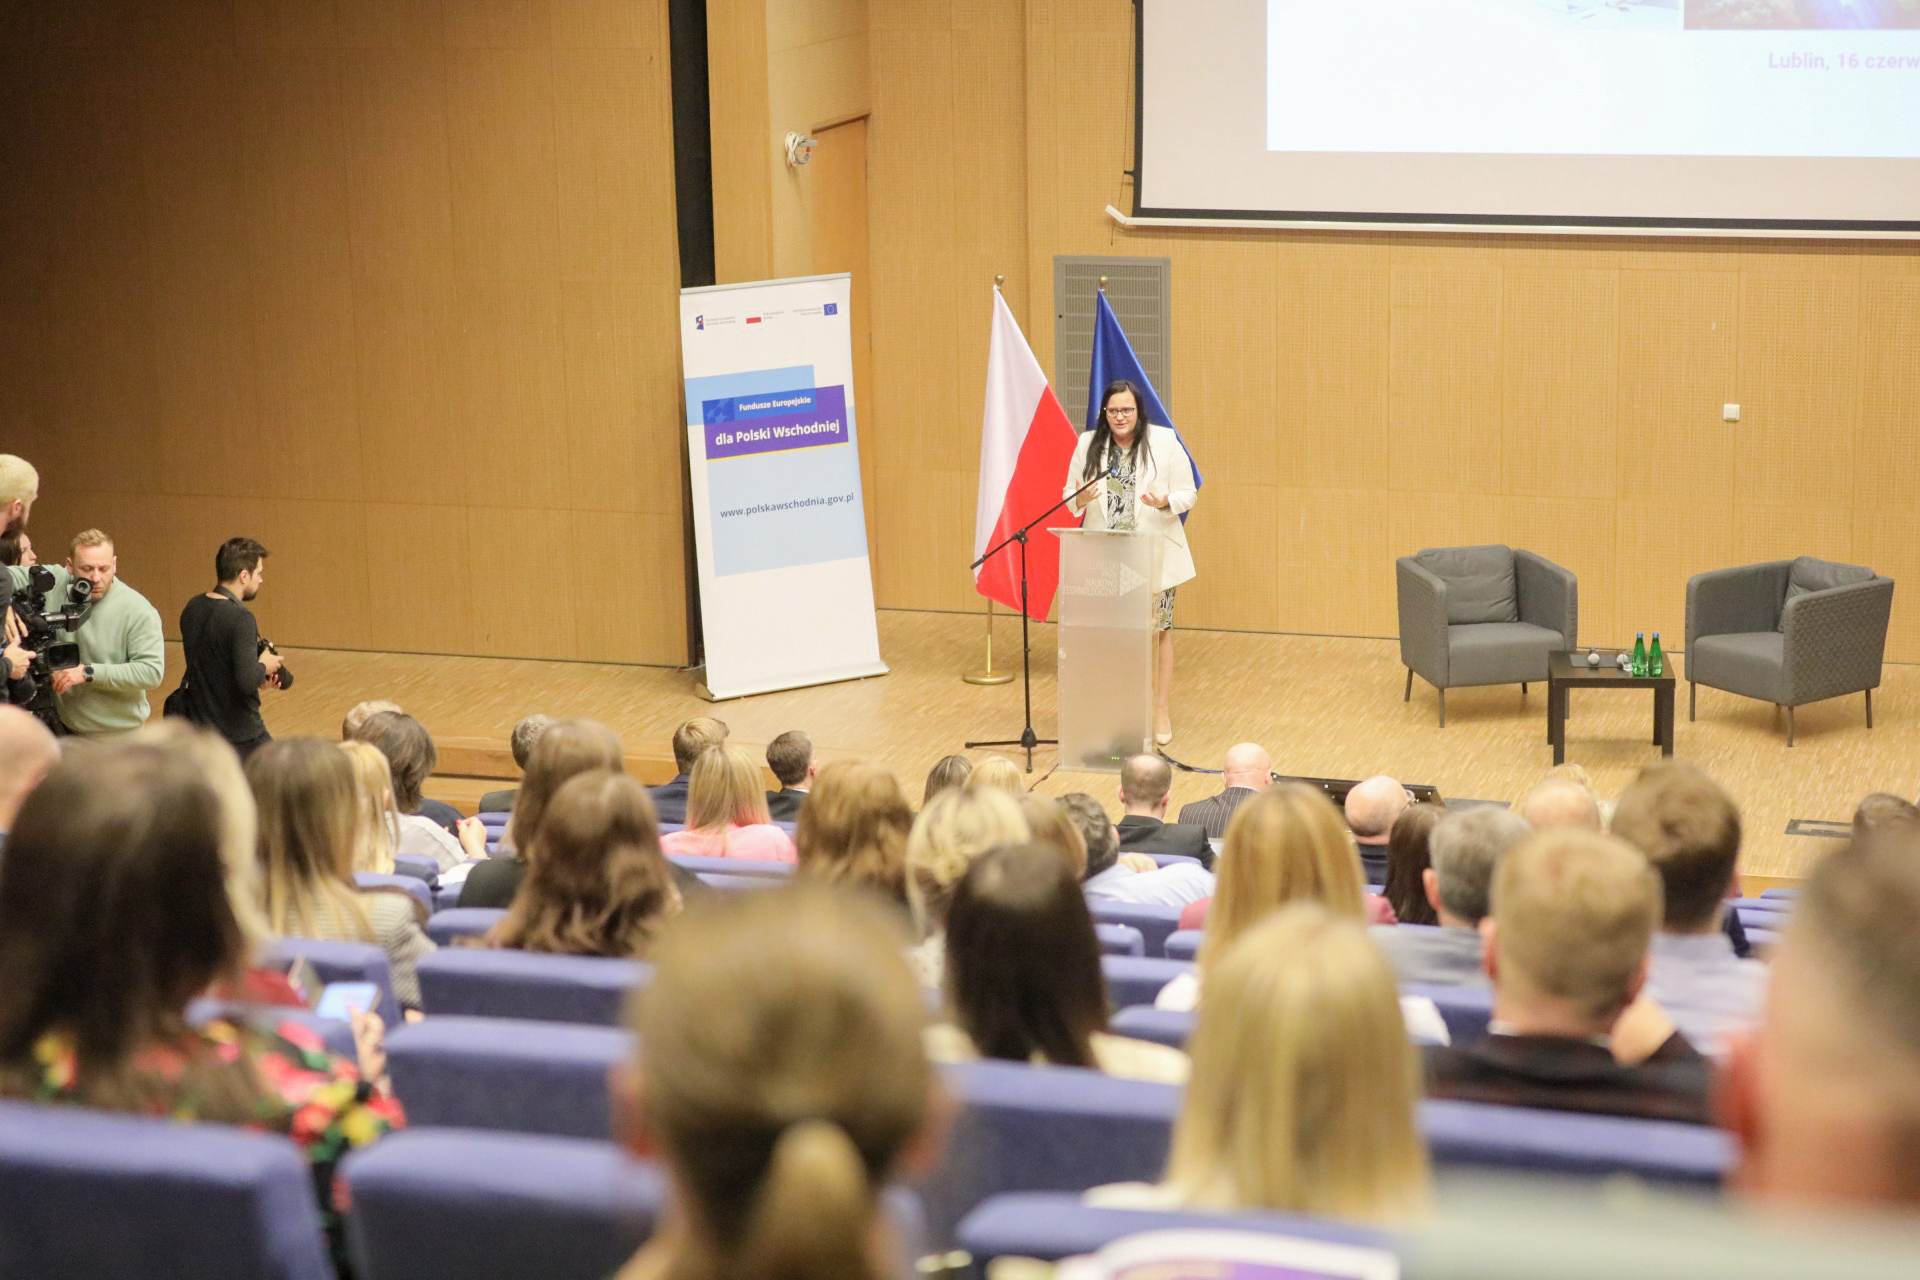 Warsztaty regionalne dla beneficjentów programu Fundusze Europejskie dla Polski Wschodniej 2021-2027 w Lublinie